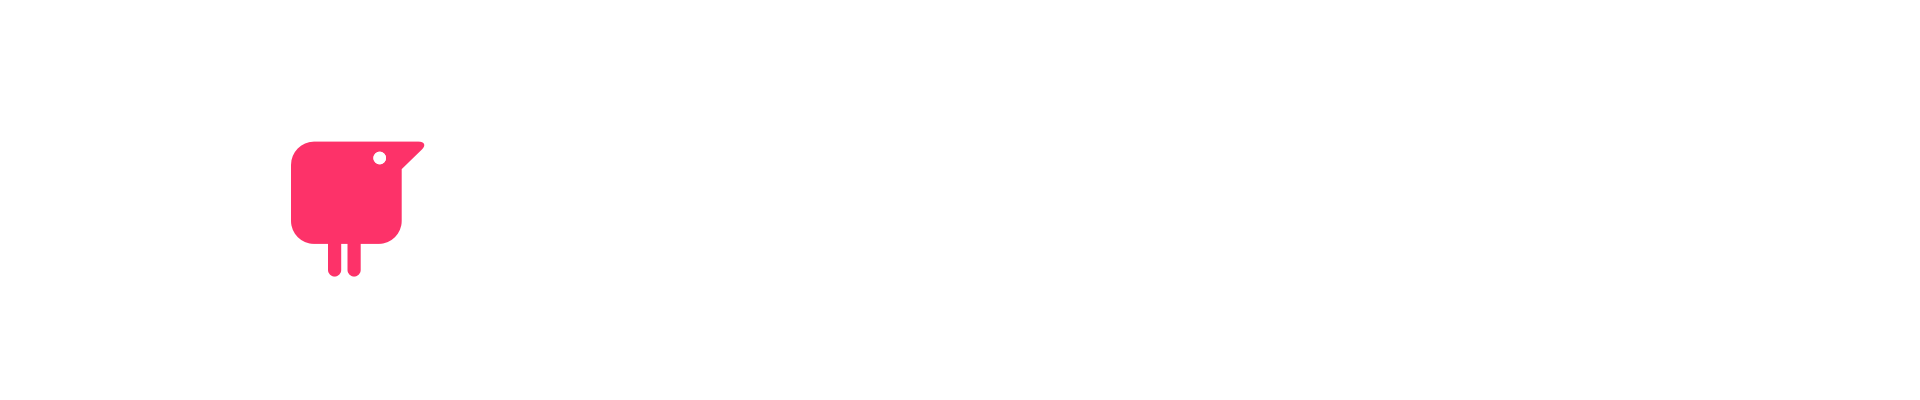 Texthelp & KPMG logos